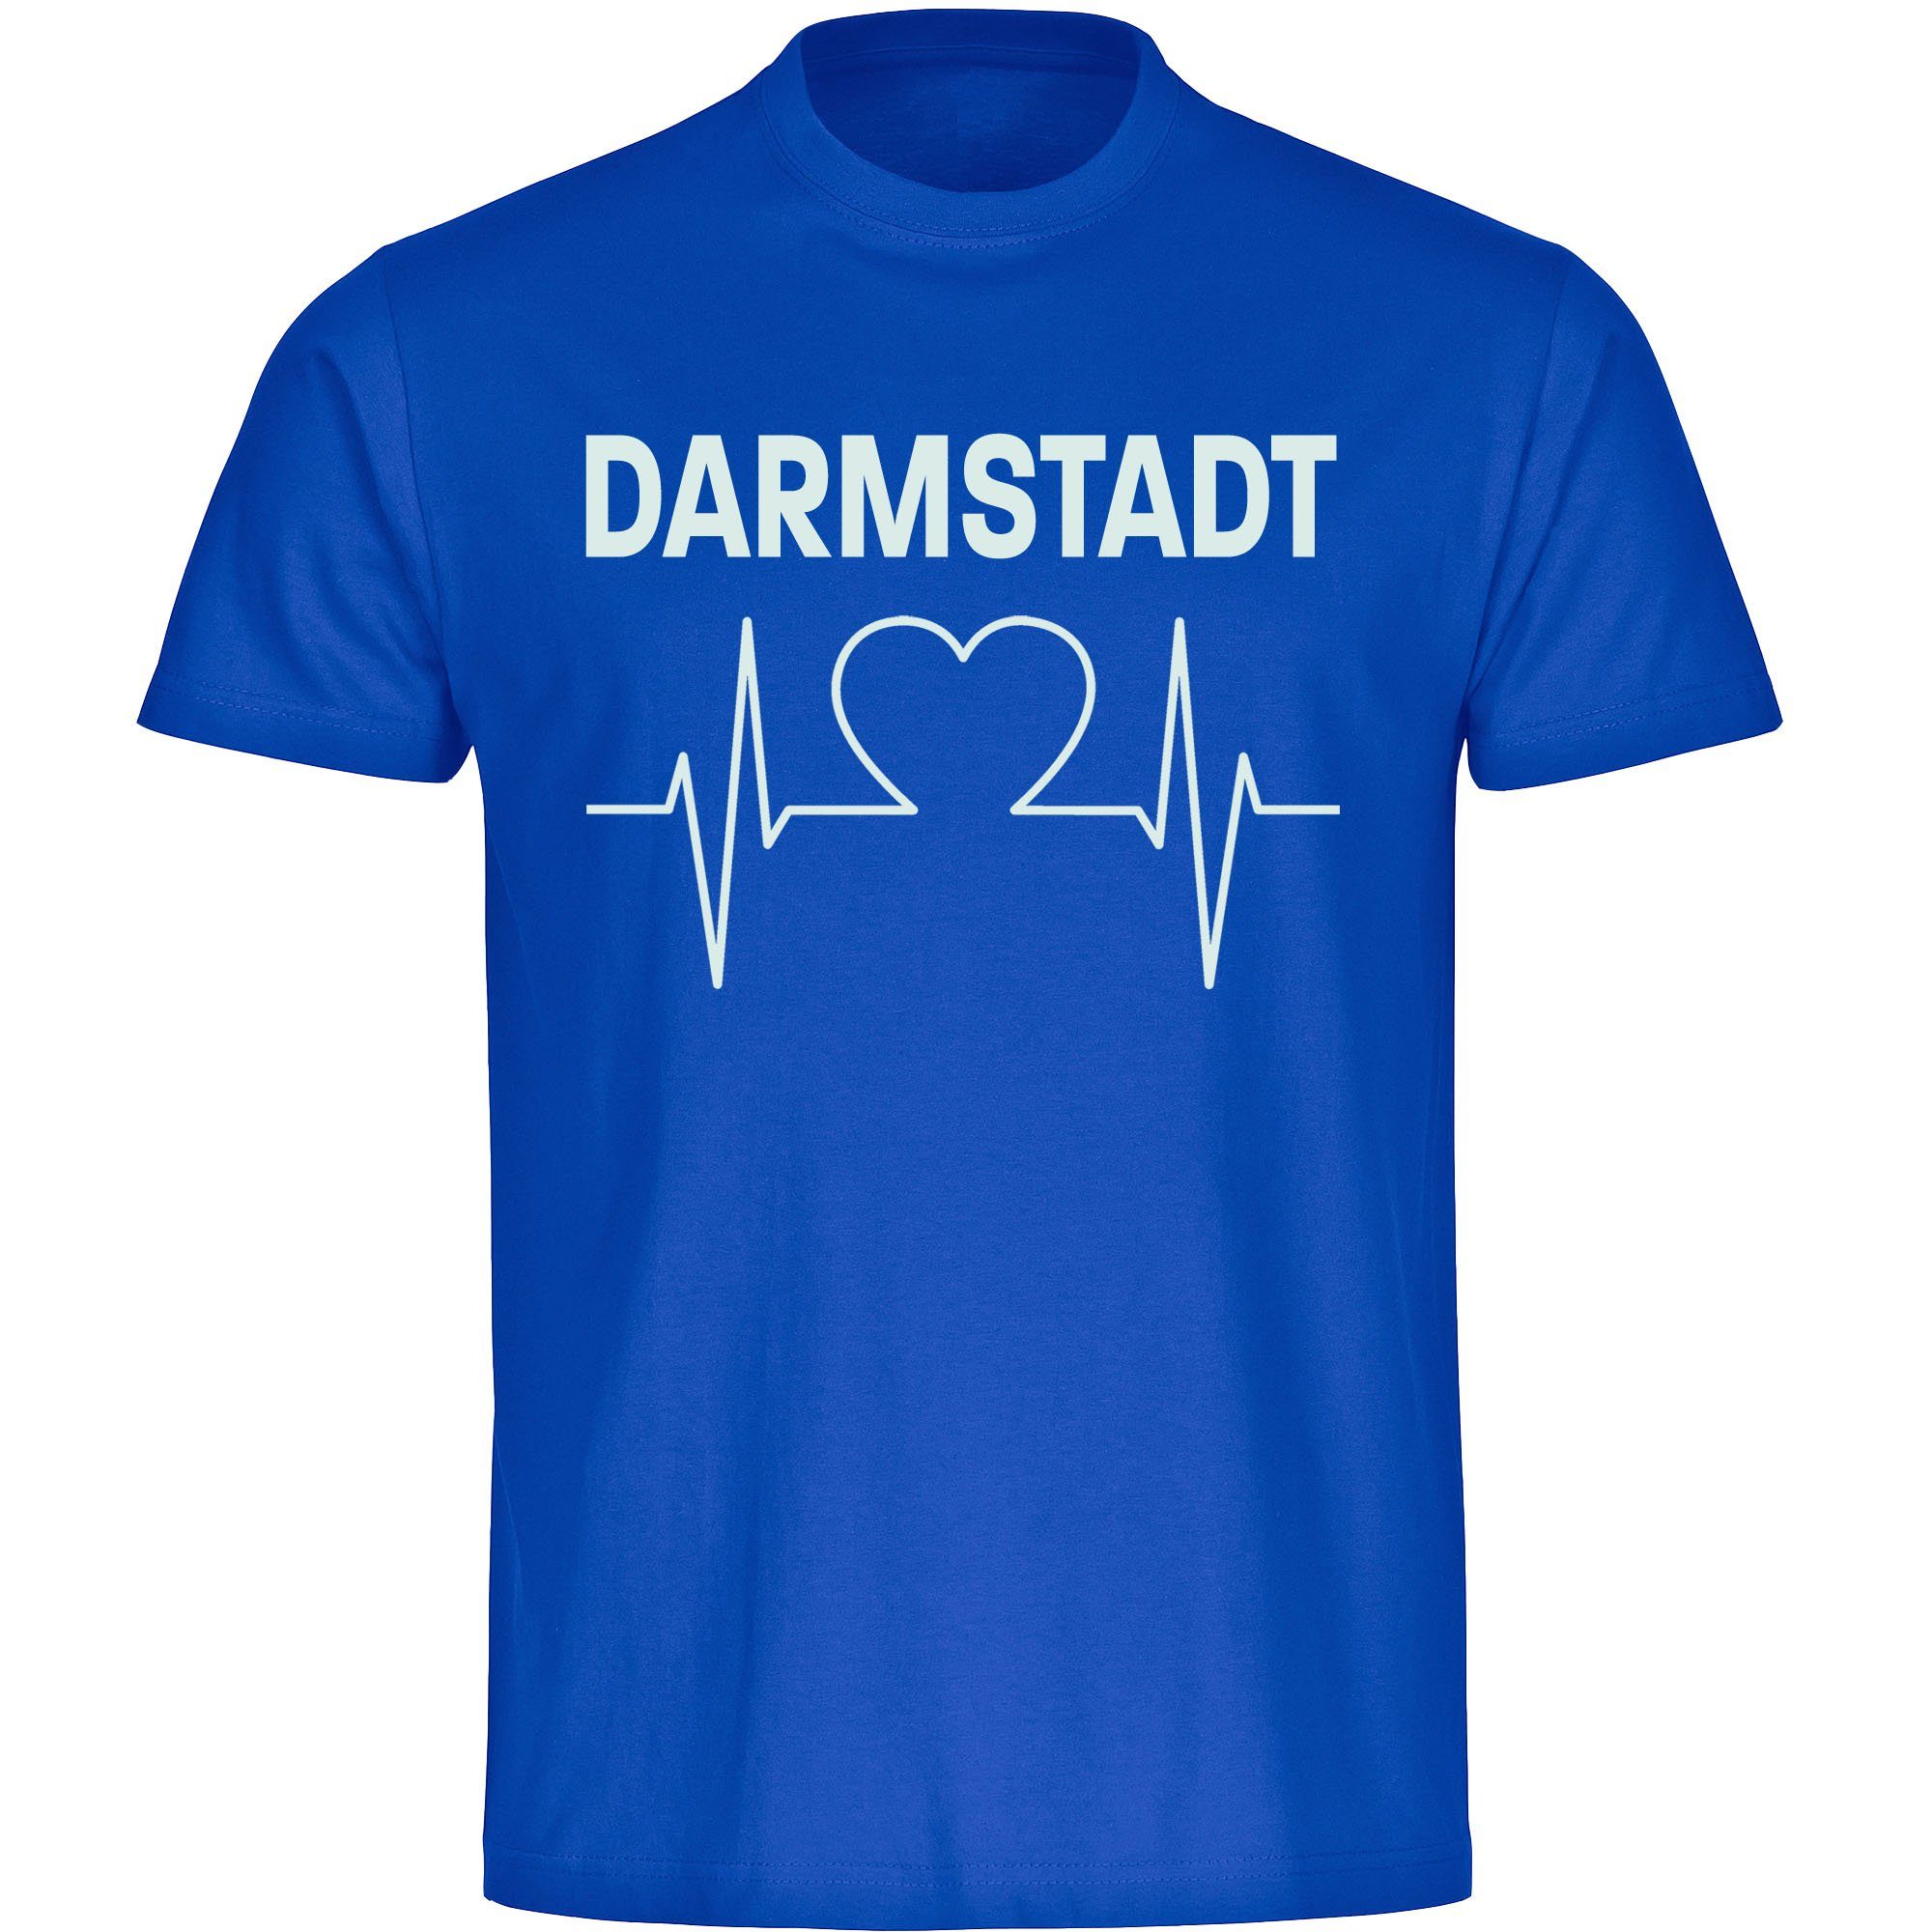 multifanshop T-Shirt Herren Darmstadt - Herzschlag - Männer